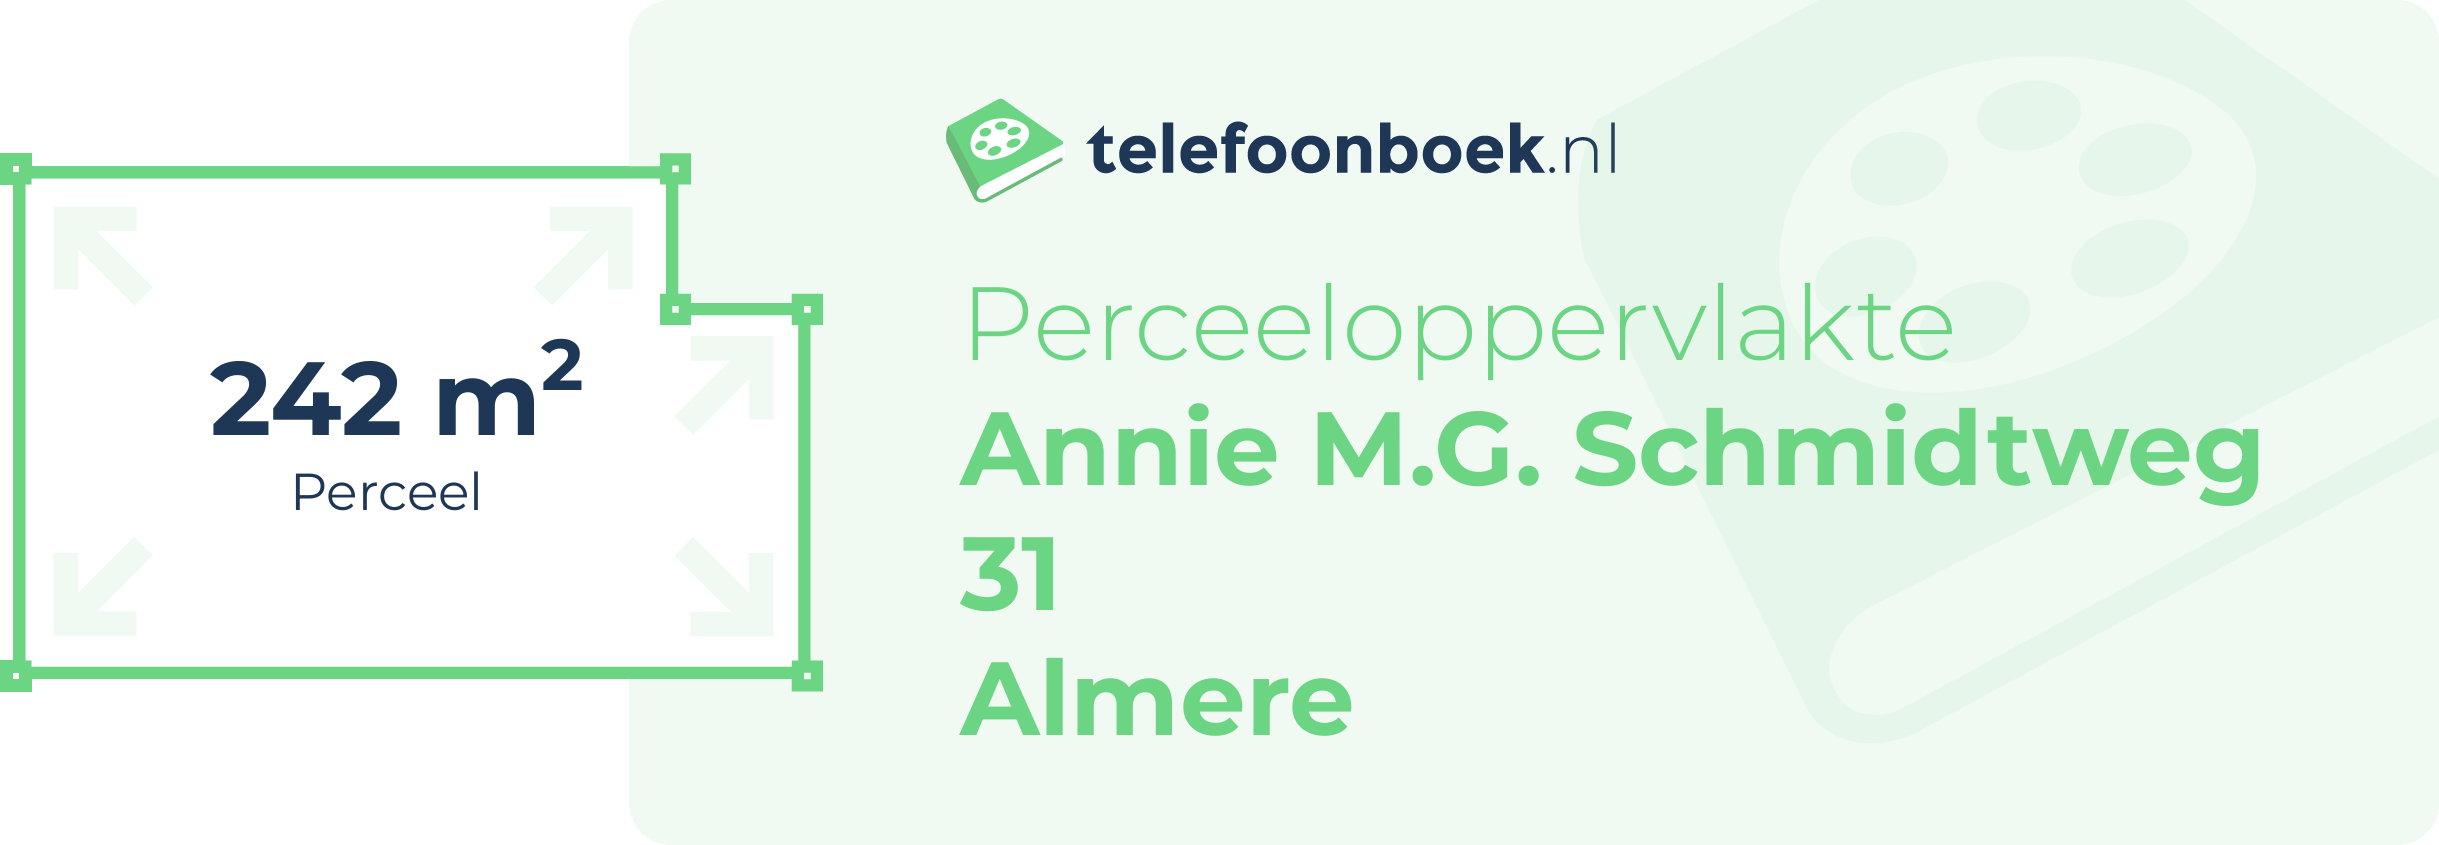 Perceeloppervlakte Annie M.G. Schmidtweg 31 Almere